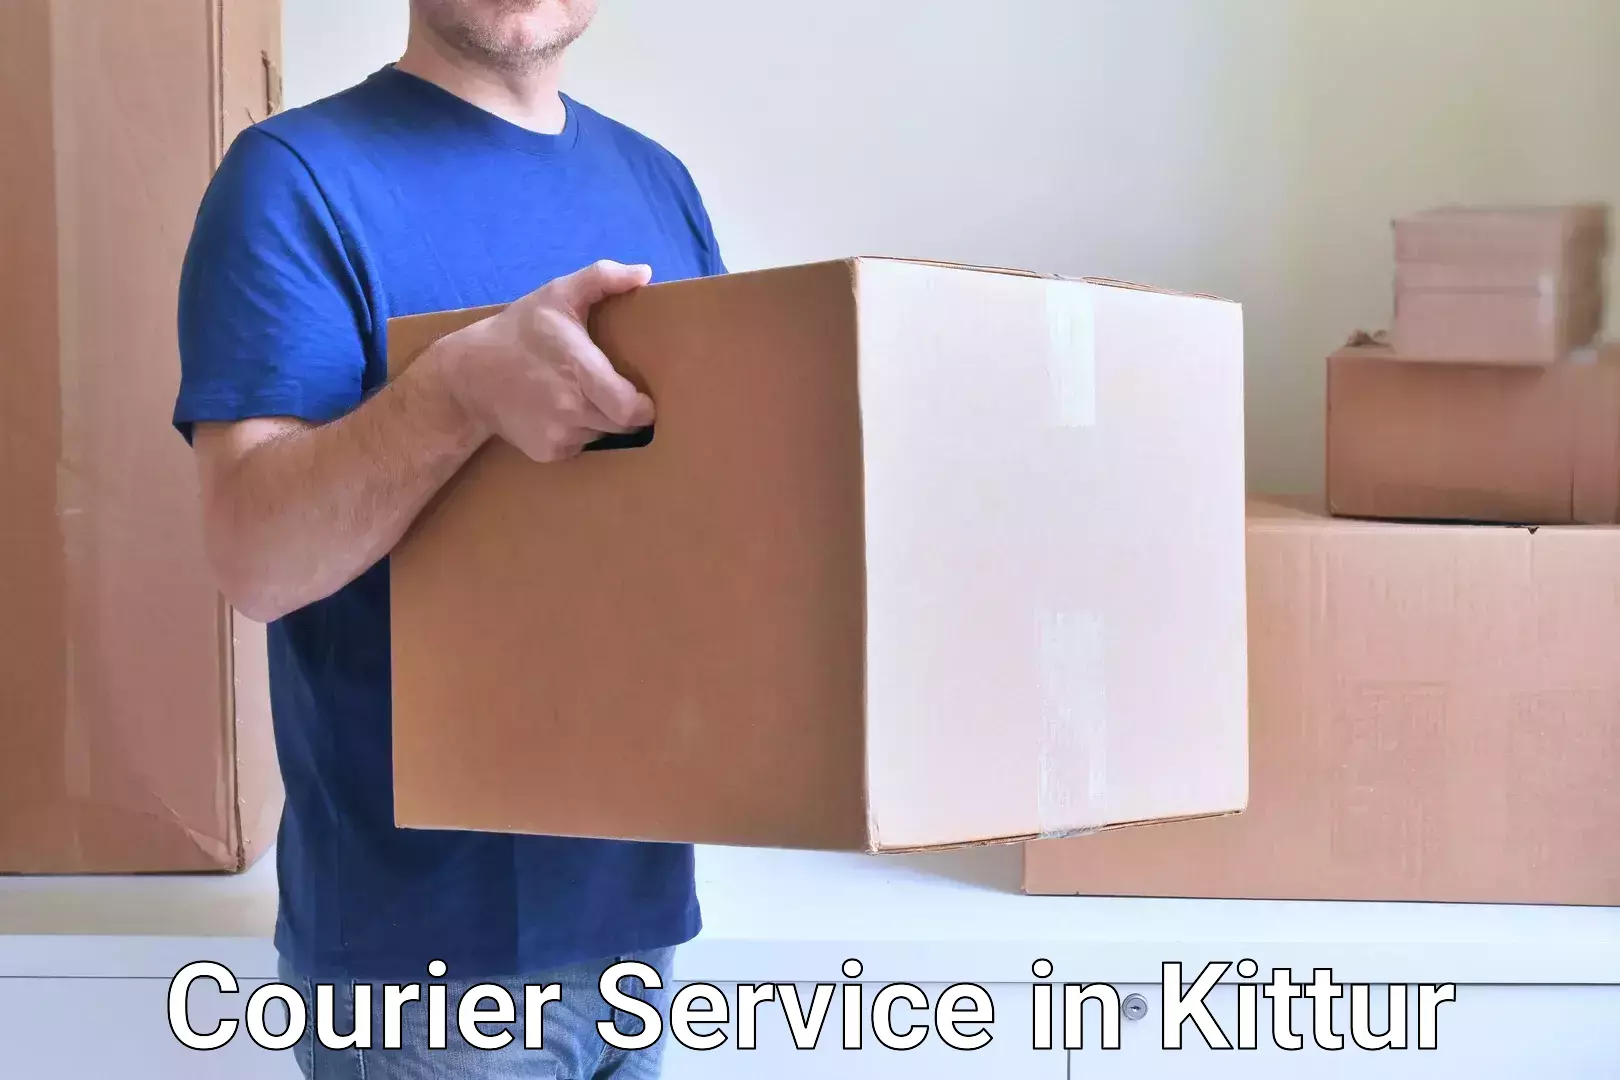 Easy return solutions in Kittur